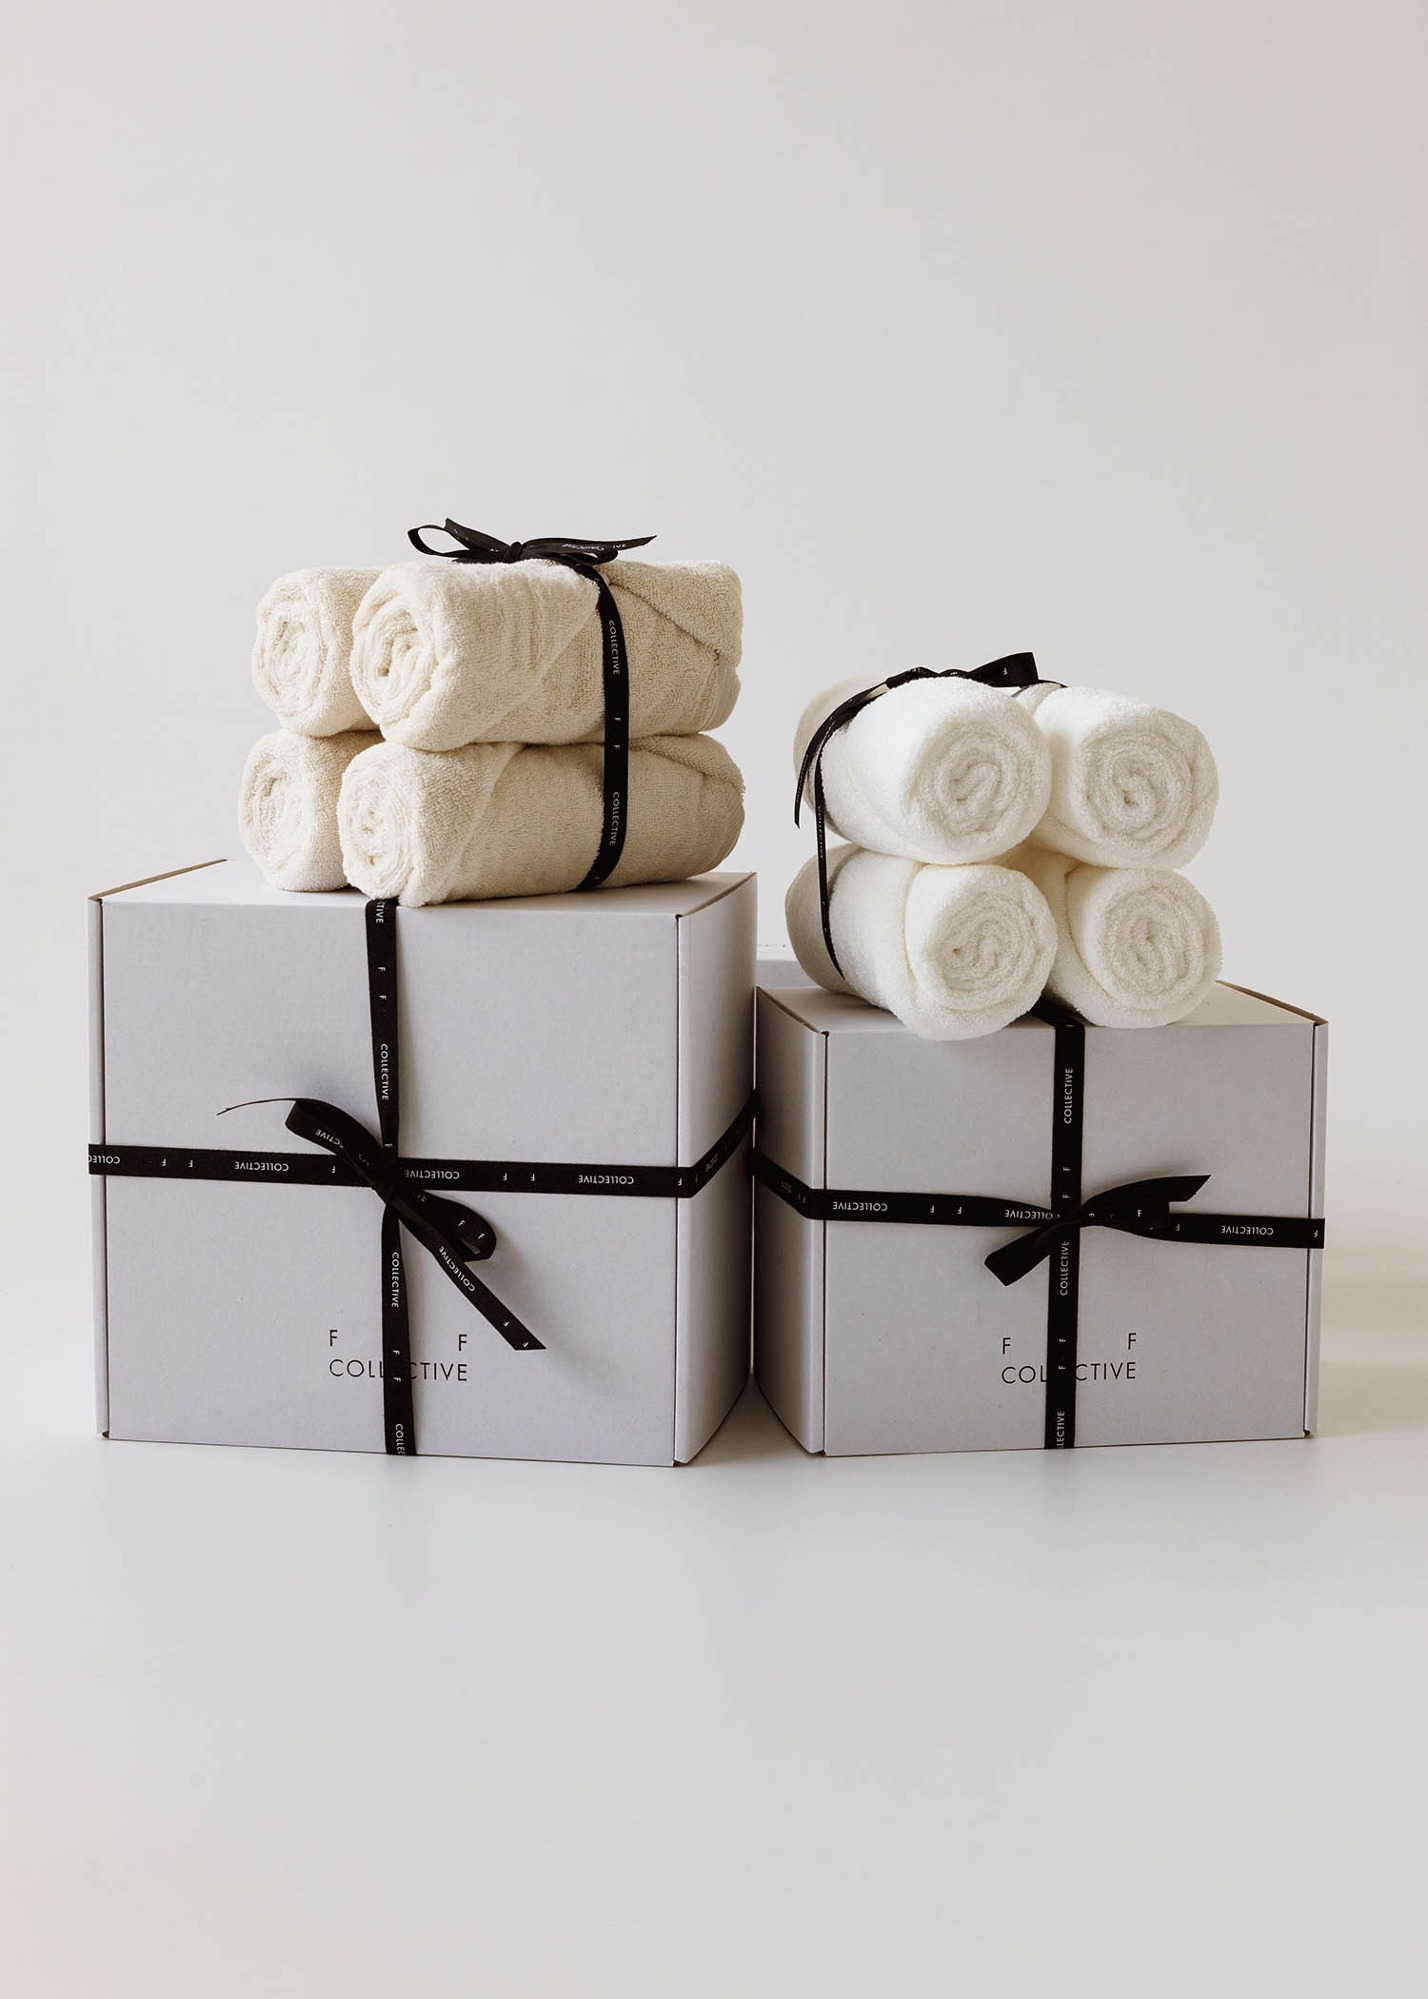 Cotton Towel Gift Set (2 colors)